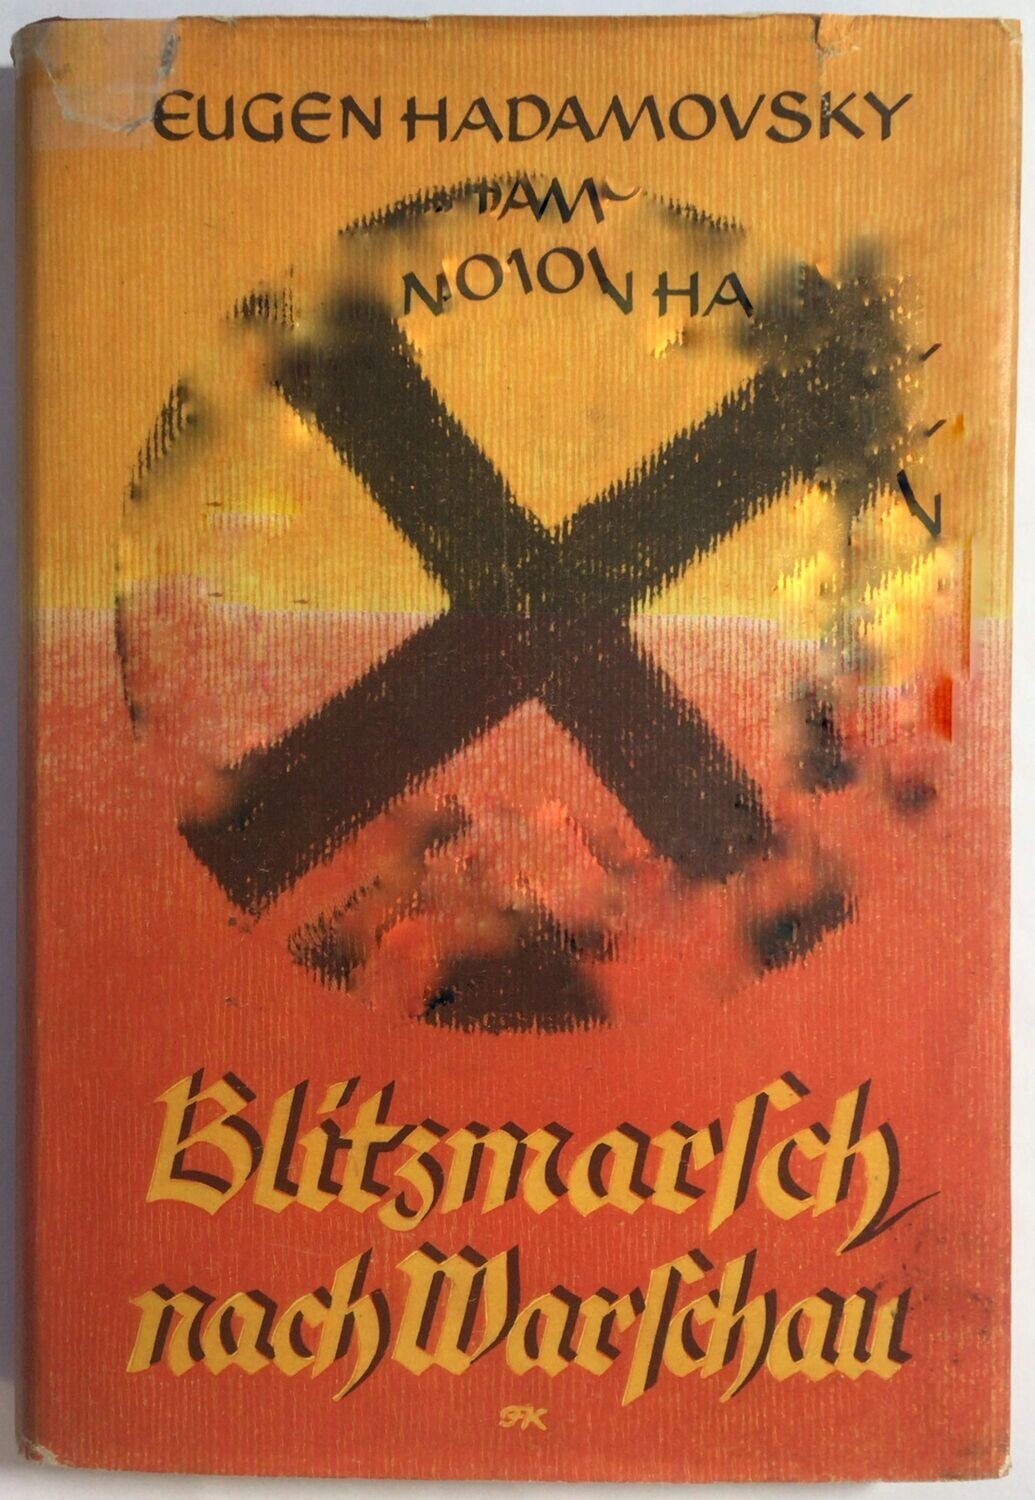 Hadamovsky: Blitzmarsch nach Warschau - Halbleinenausgabe (5. Auflage) aus dem Jahr 1941 mit Original-Schutzumschlag